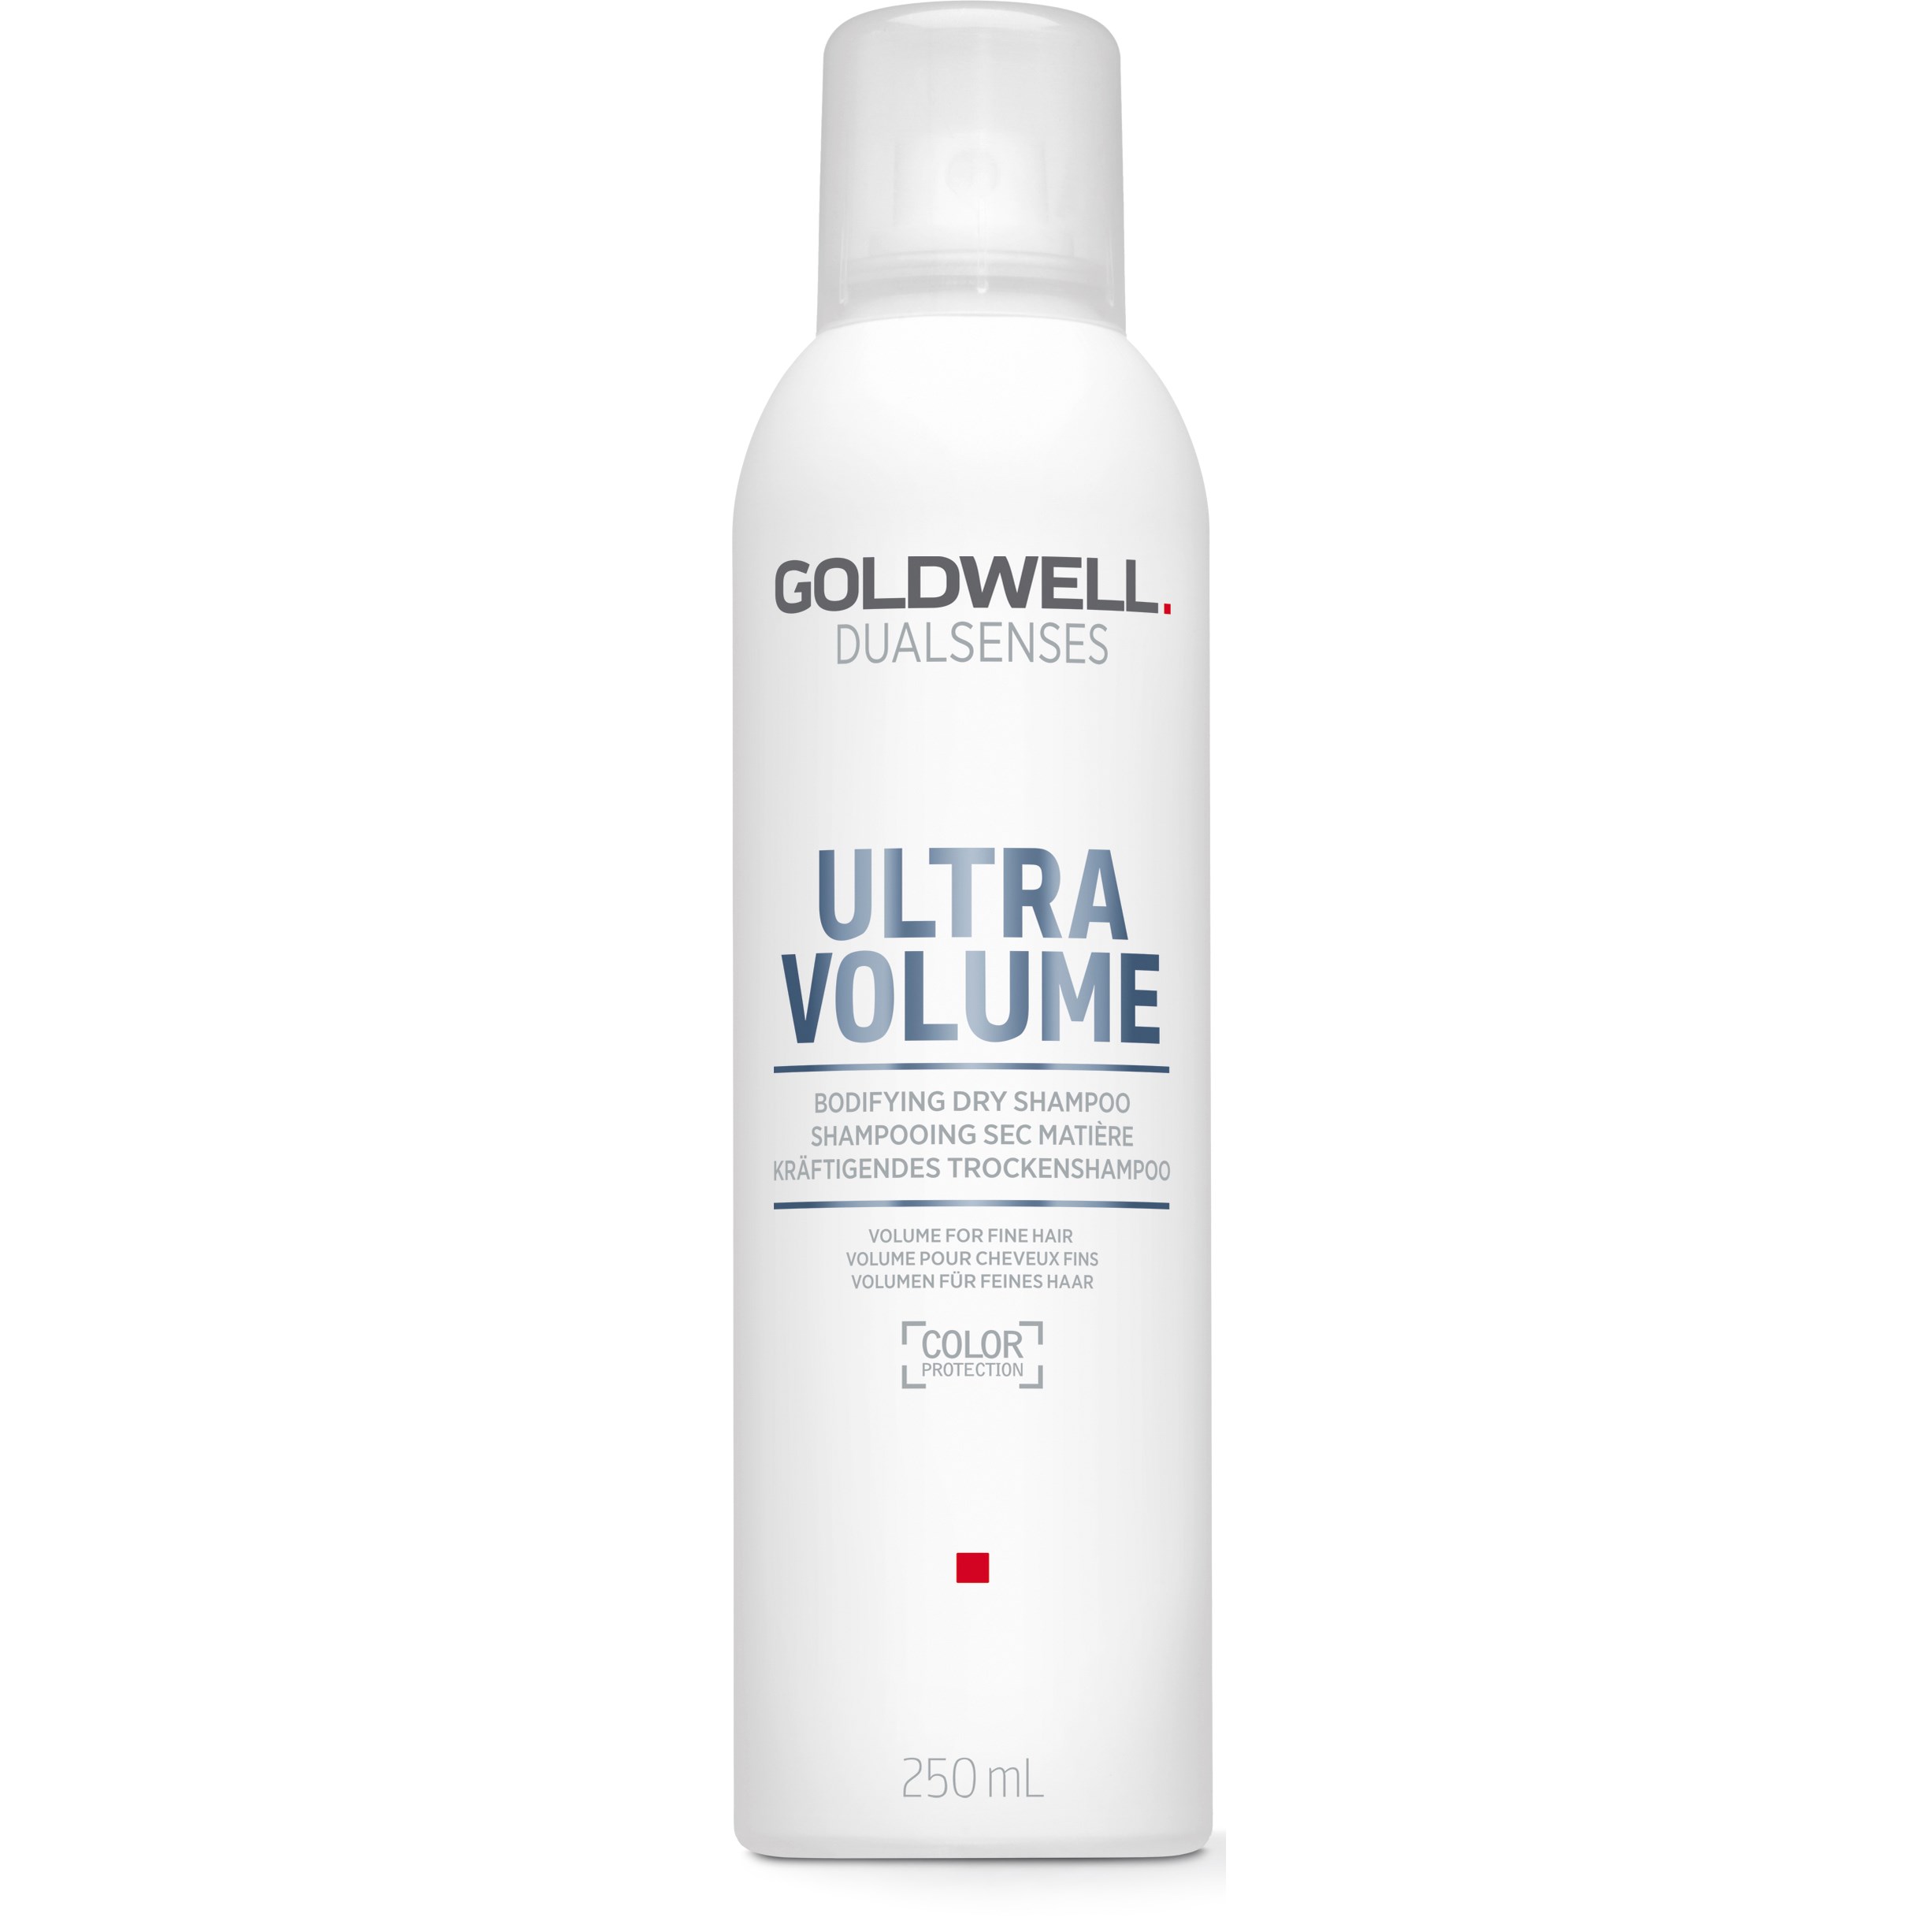 Bilde av Goldwell Dualsenses Ultra Volume Bodifying Dry Shampoo 250 Ml